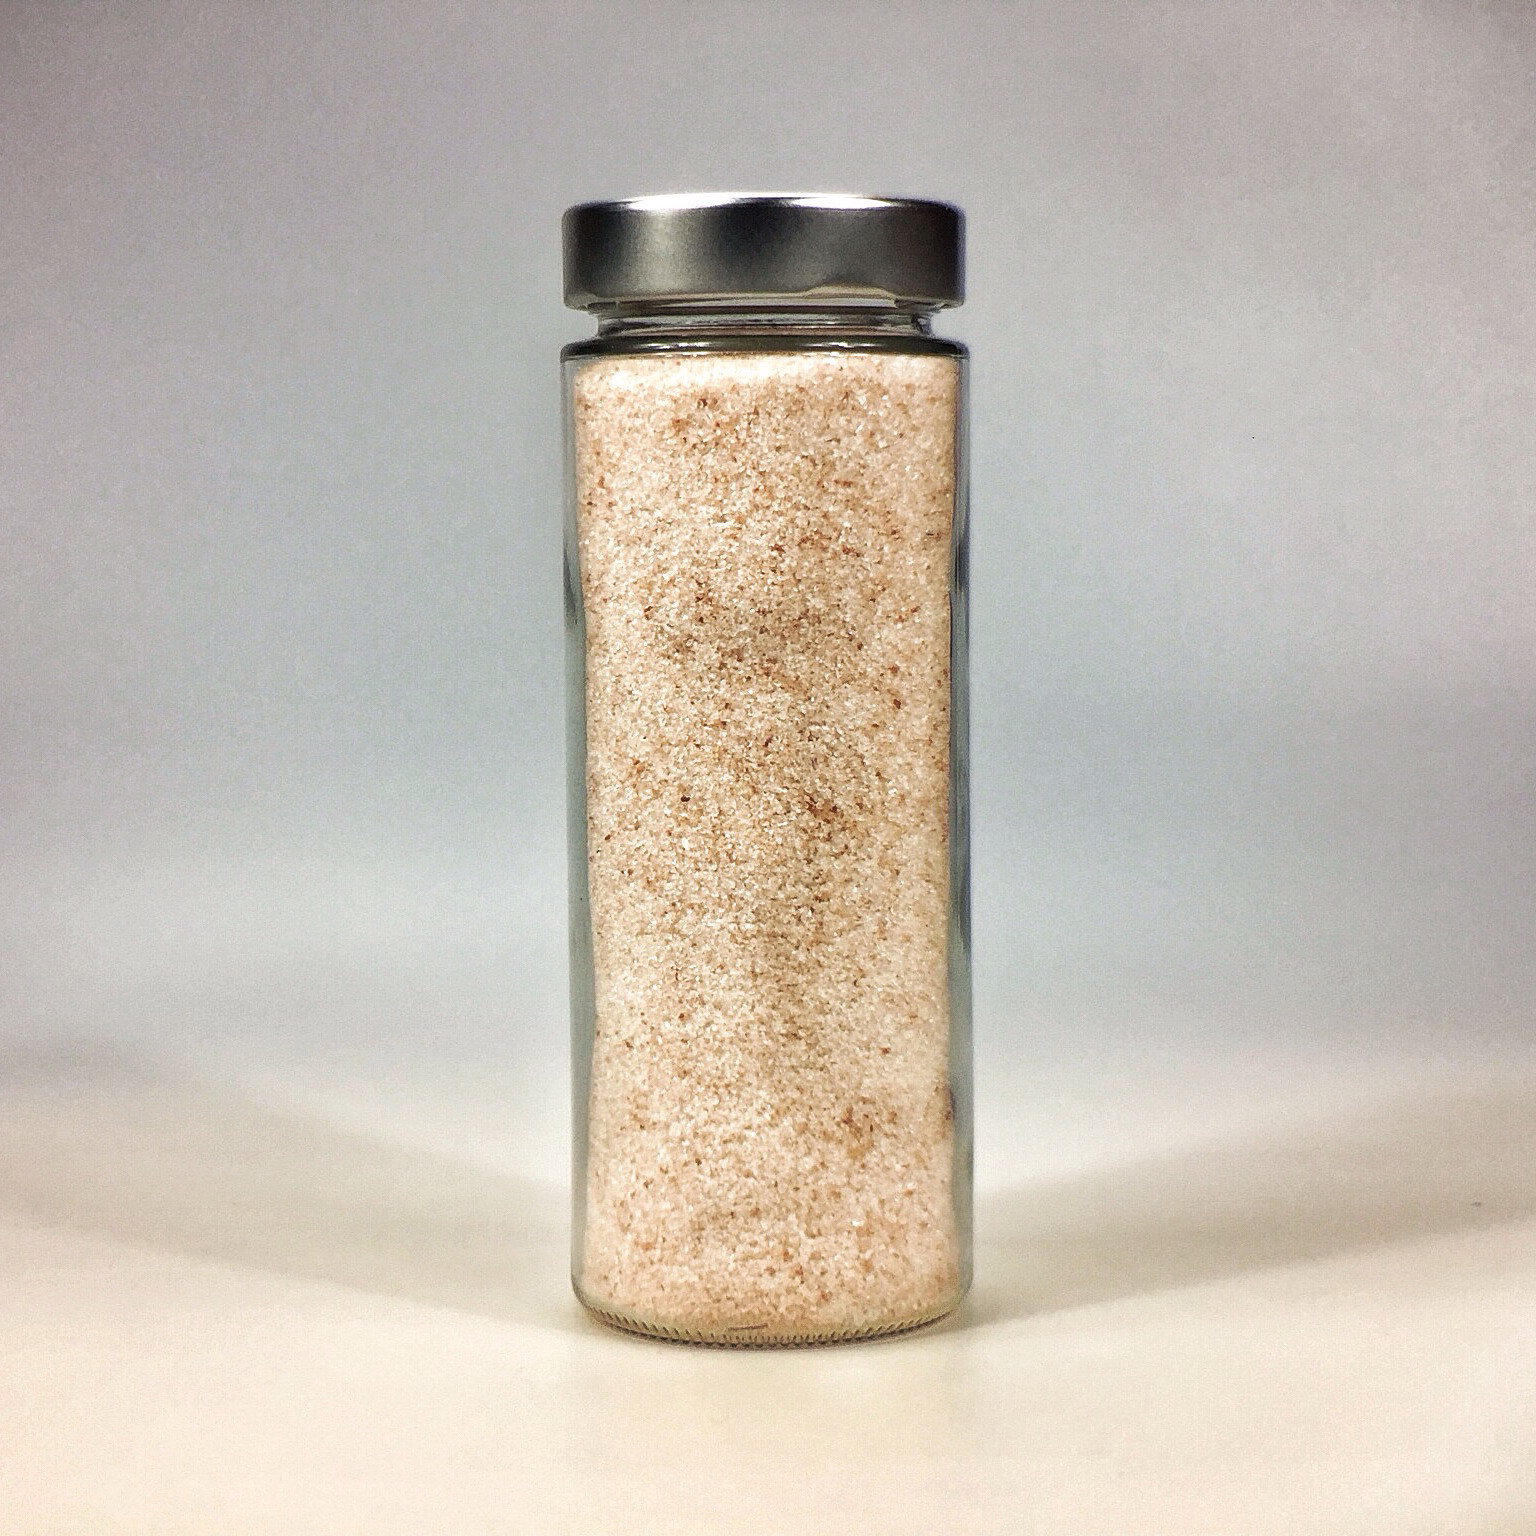 Himalaya Salz fein gemahlen für Salzstreuer im grossen Glas mit Silberdeckel